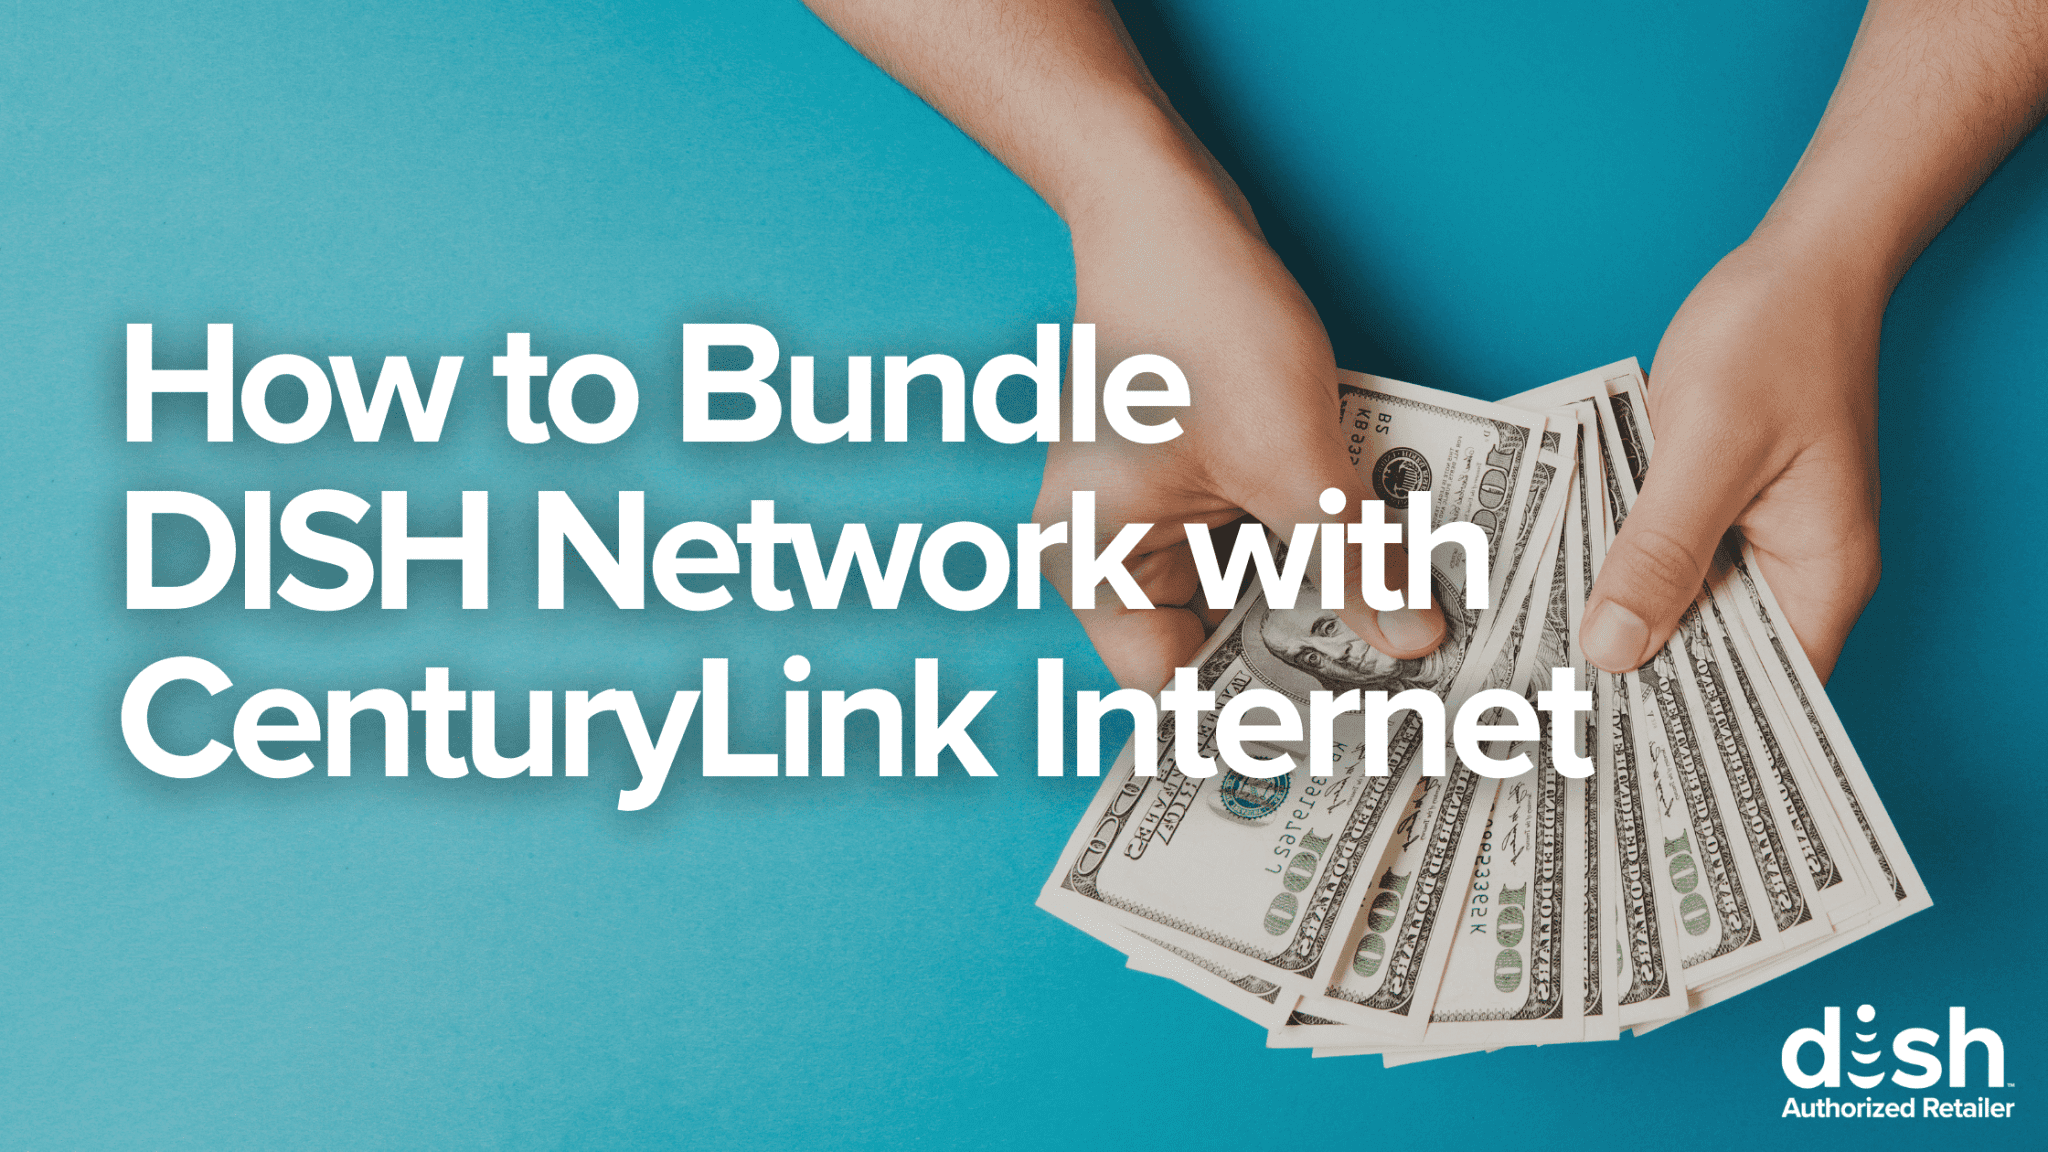 centurylink-bundle-with-dish-network-godish